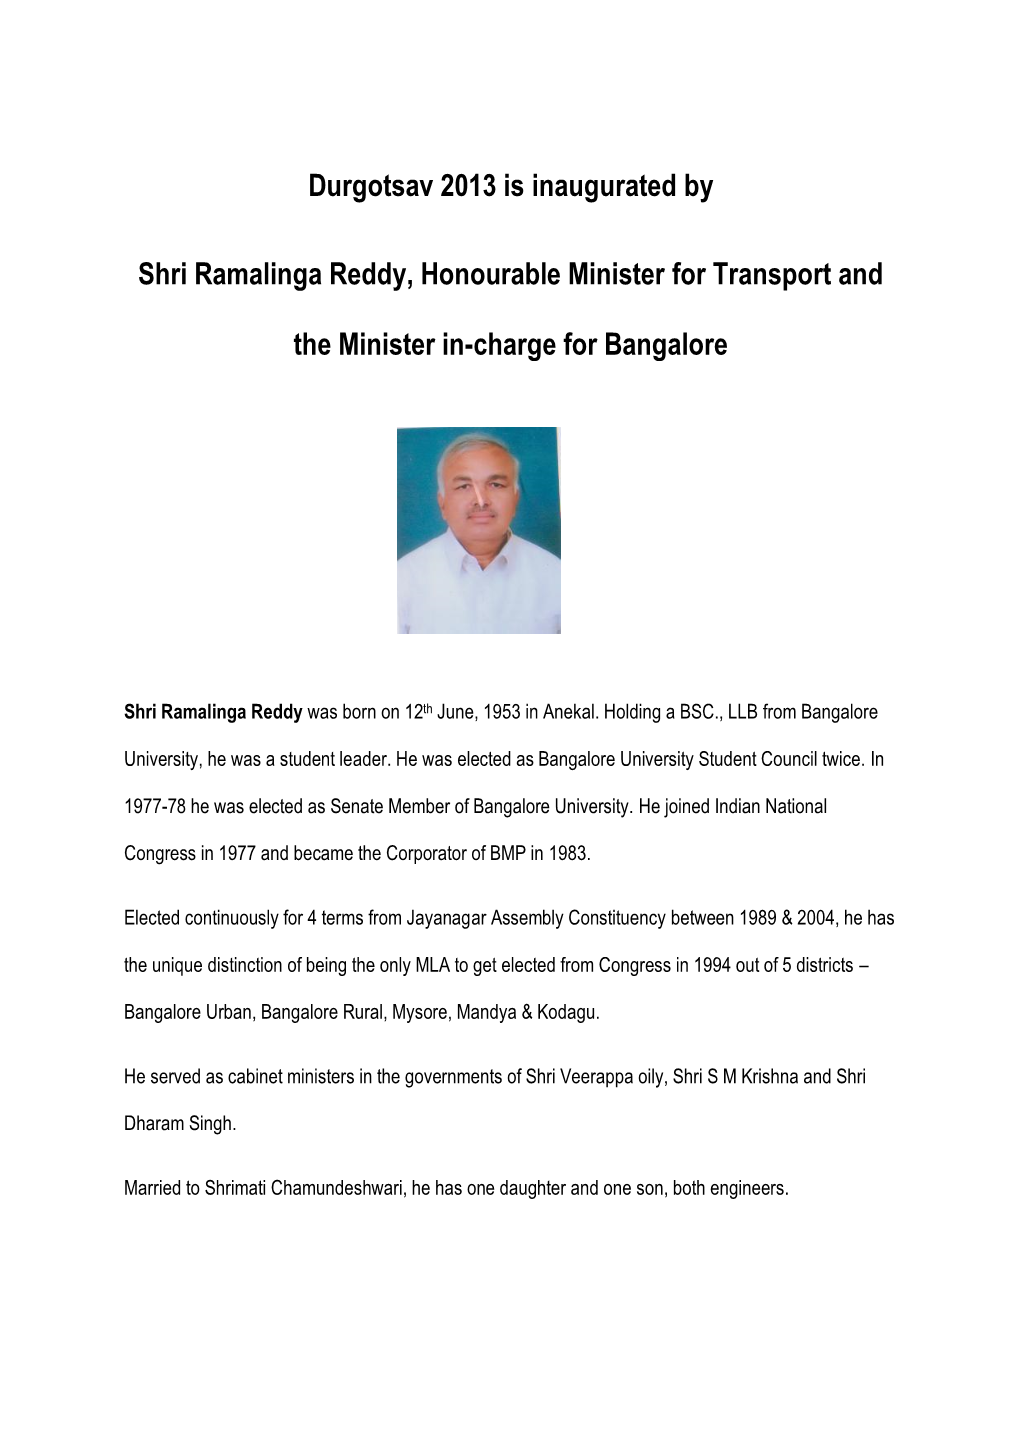 Durgotsav 2013 Is Inaugurated by Shri Ramalinga Reddy, Honourable